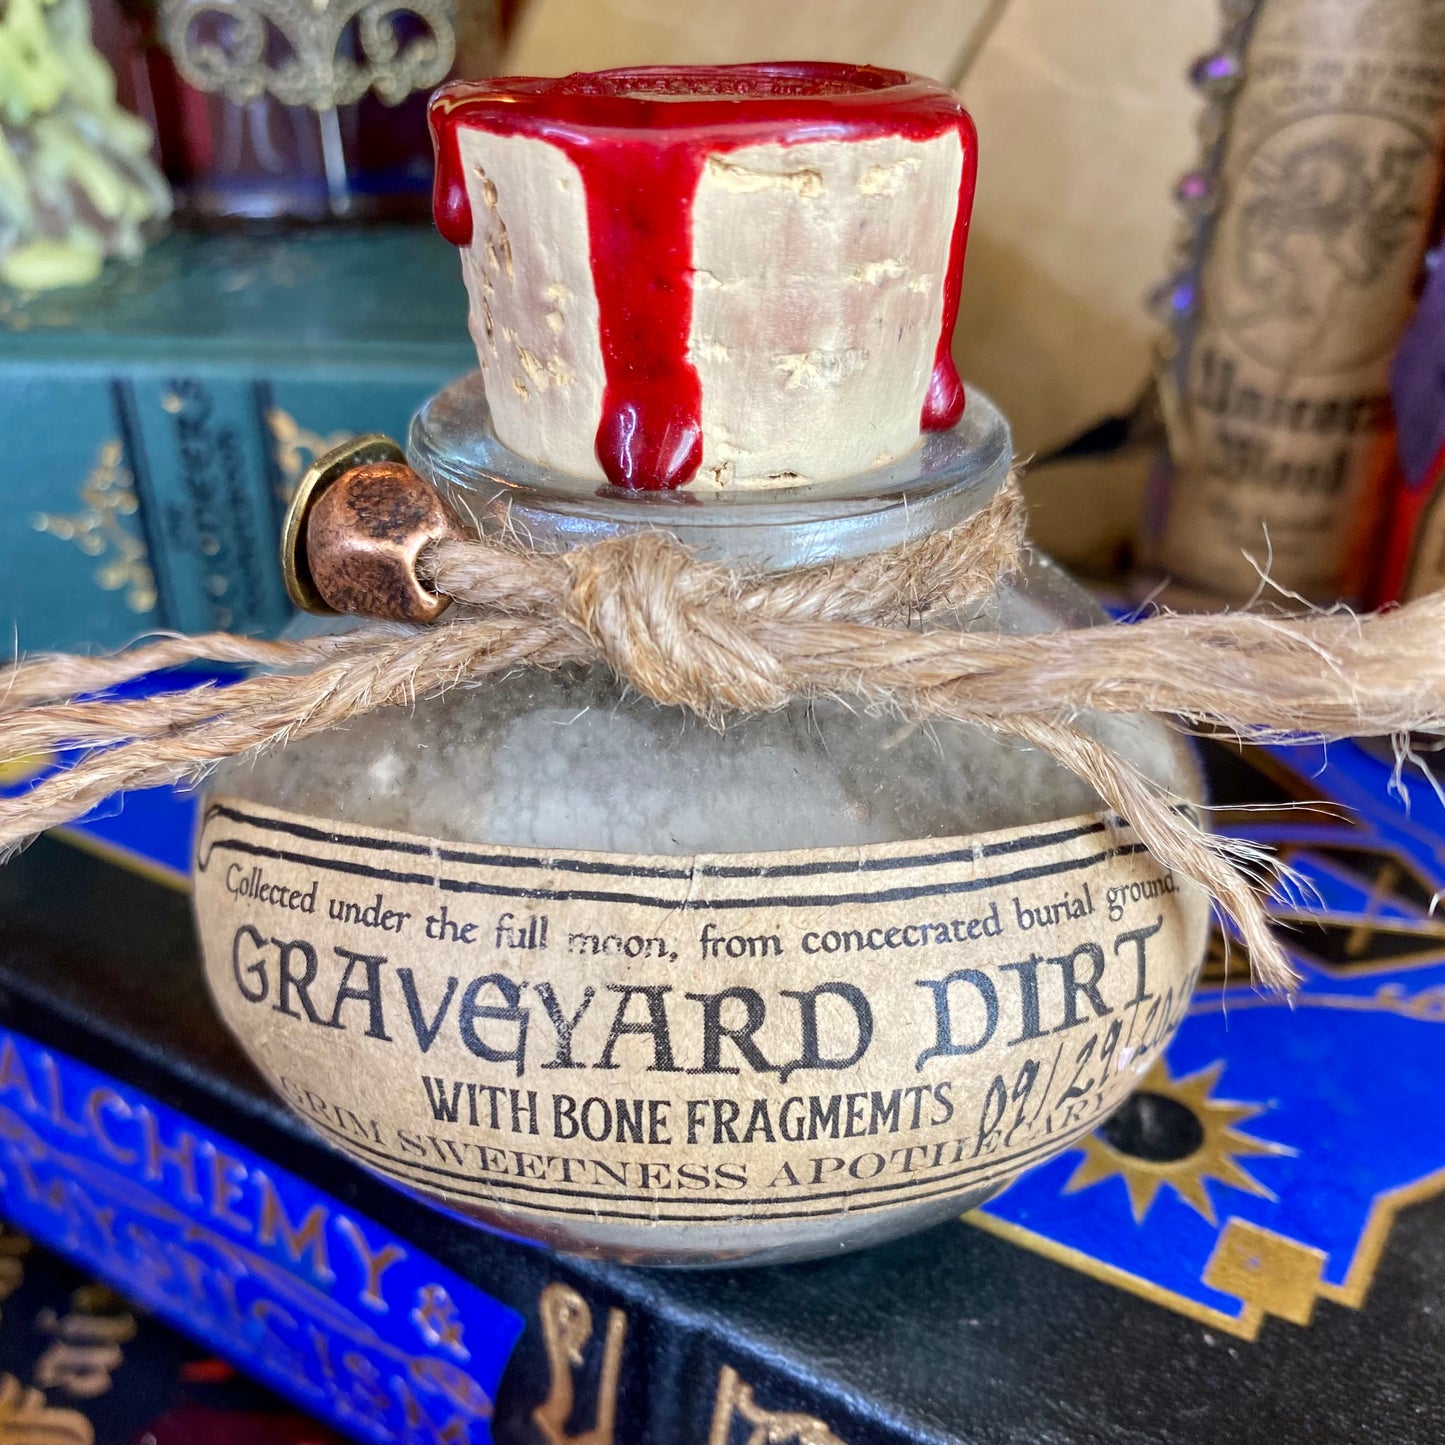 Graveyard Dirt, A Decorative Apothecary Jar